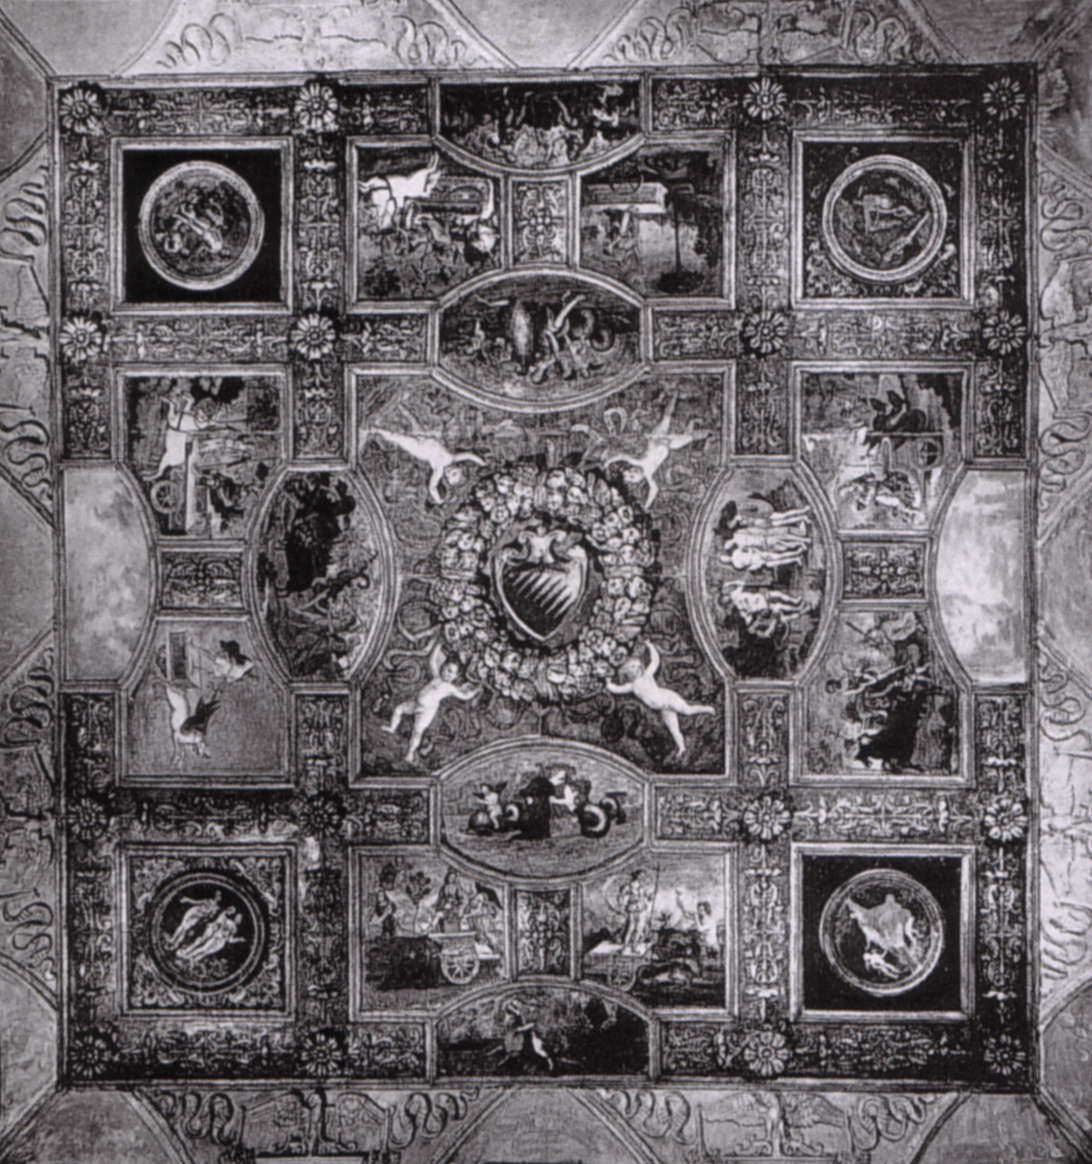 Le plafond de Pinturicchio avant son démembrement